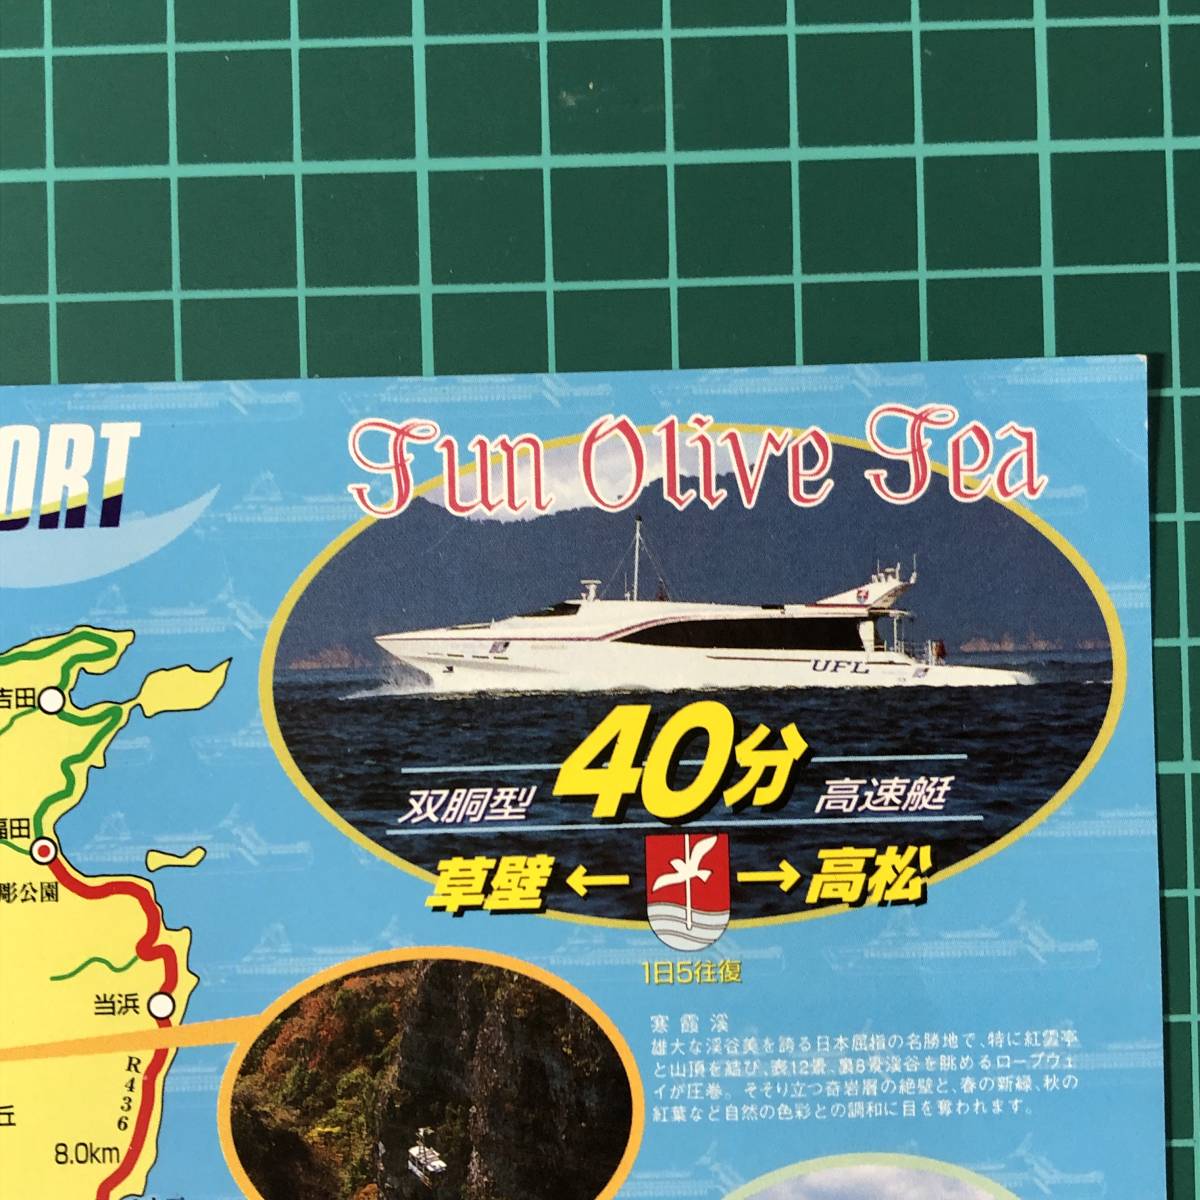  голубой линия солнечный оливковый si- внутри море Ferrie . стена ~ Takamatsu установленный срок туристический Ferrie . туловище type высокая скорость судно рекламная листовка проспект [F0478]